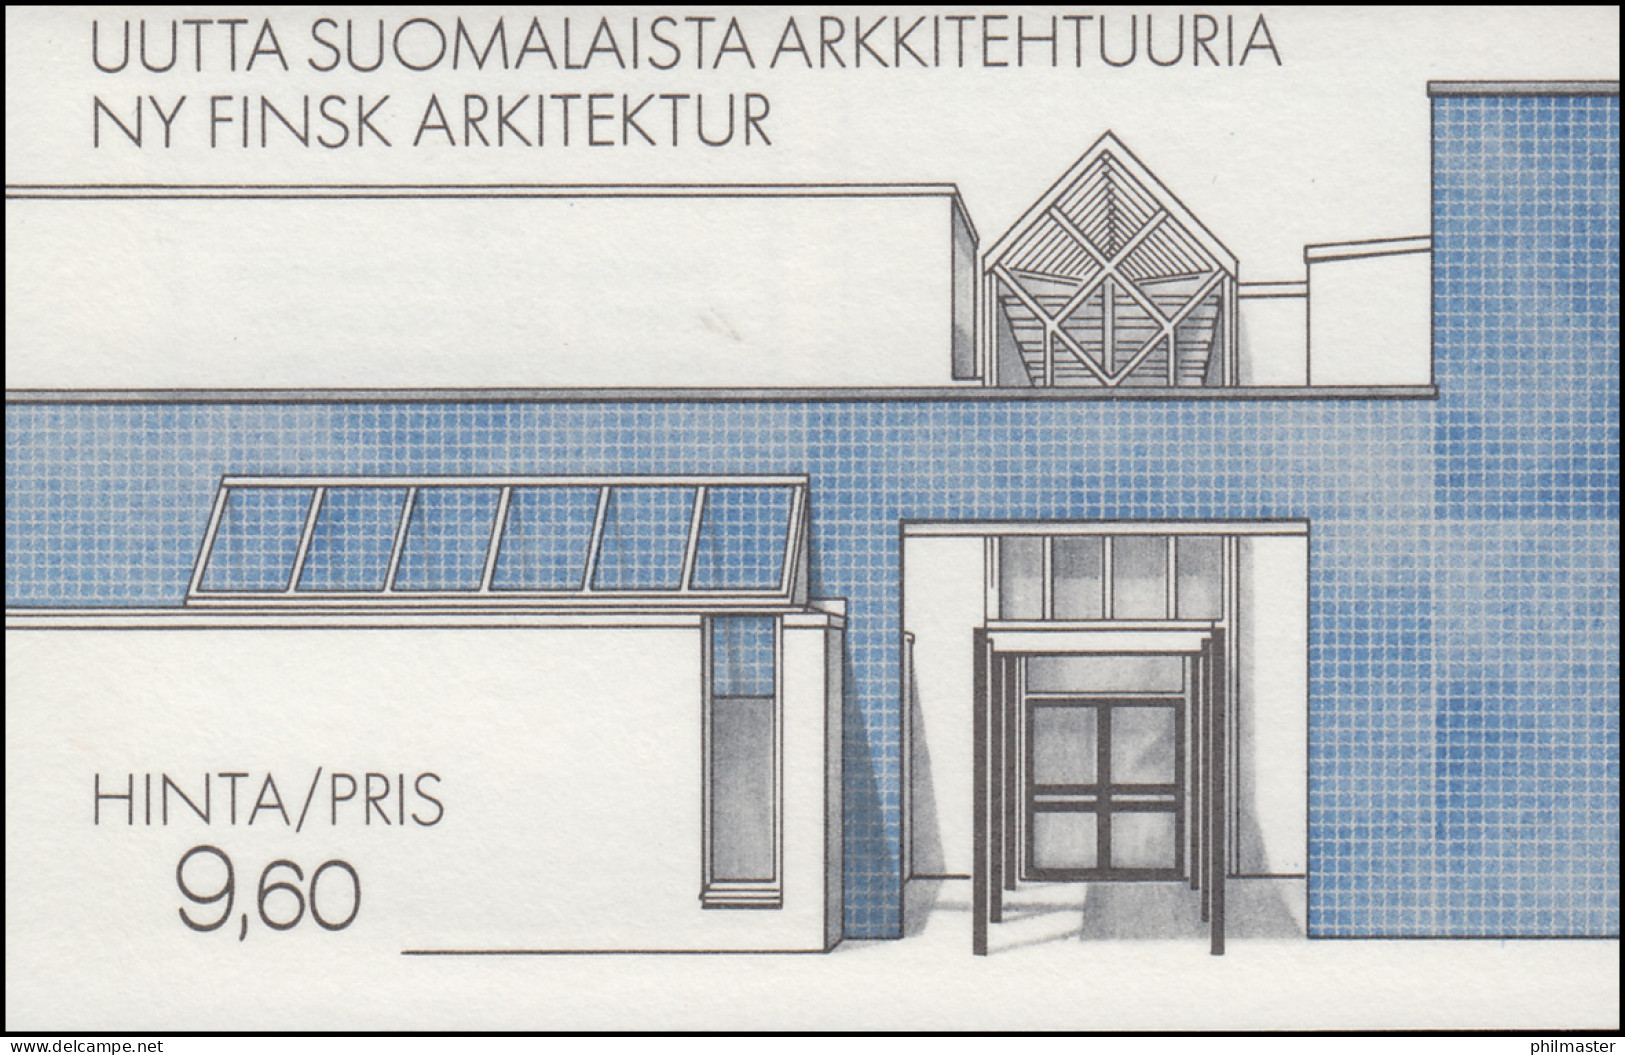 Finnland Markenheftchen 17 Architektur: Moderne Gebäude, ** Postfrisch - Carnets